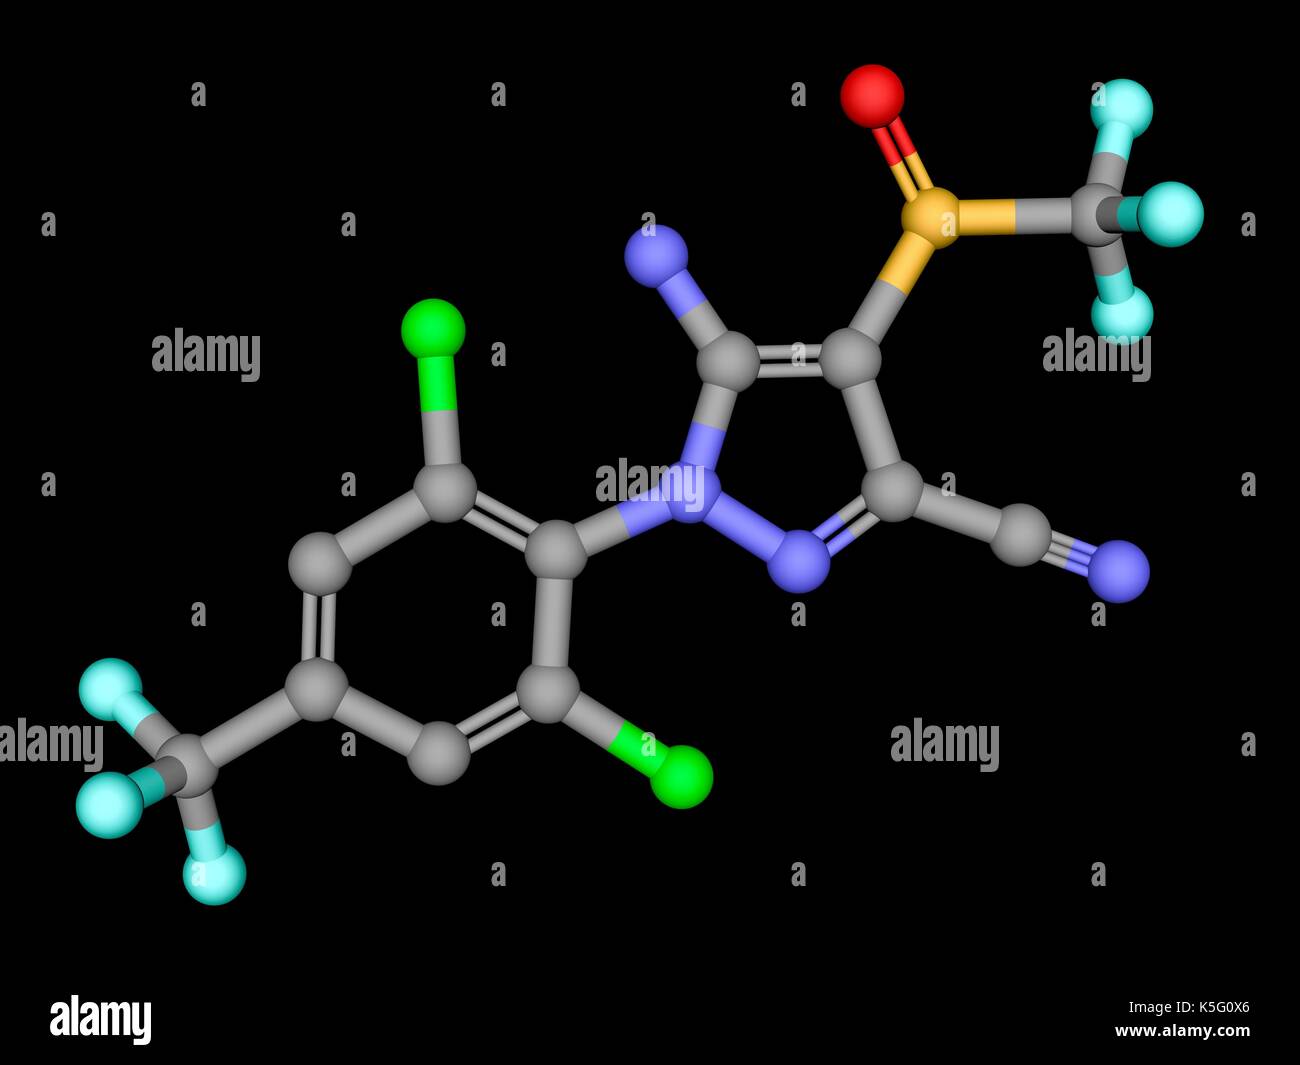 L'insecticide Fipronil, bille et stick modèle moléculaire. Les atomes sont représentés comme des sphères avec codage couleur : gris (carbone), l'oxygène (rouge), l'azote (bleu), le chlore (vert), le fluor (cyan), le soufre (jaune). Des hydrogènes sont cachés. Banque D'Images